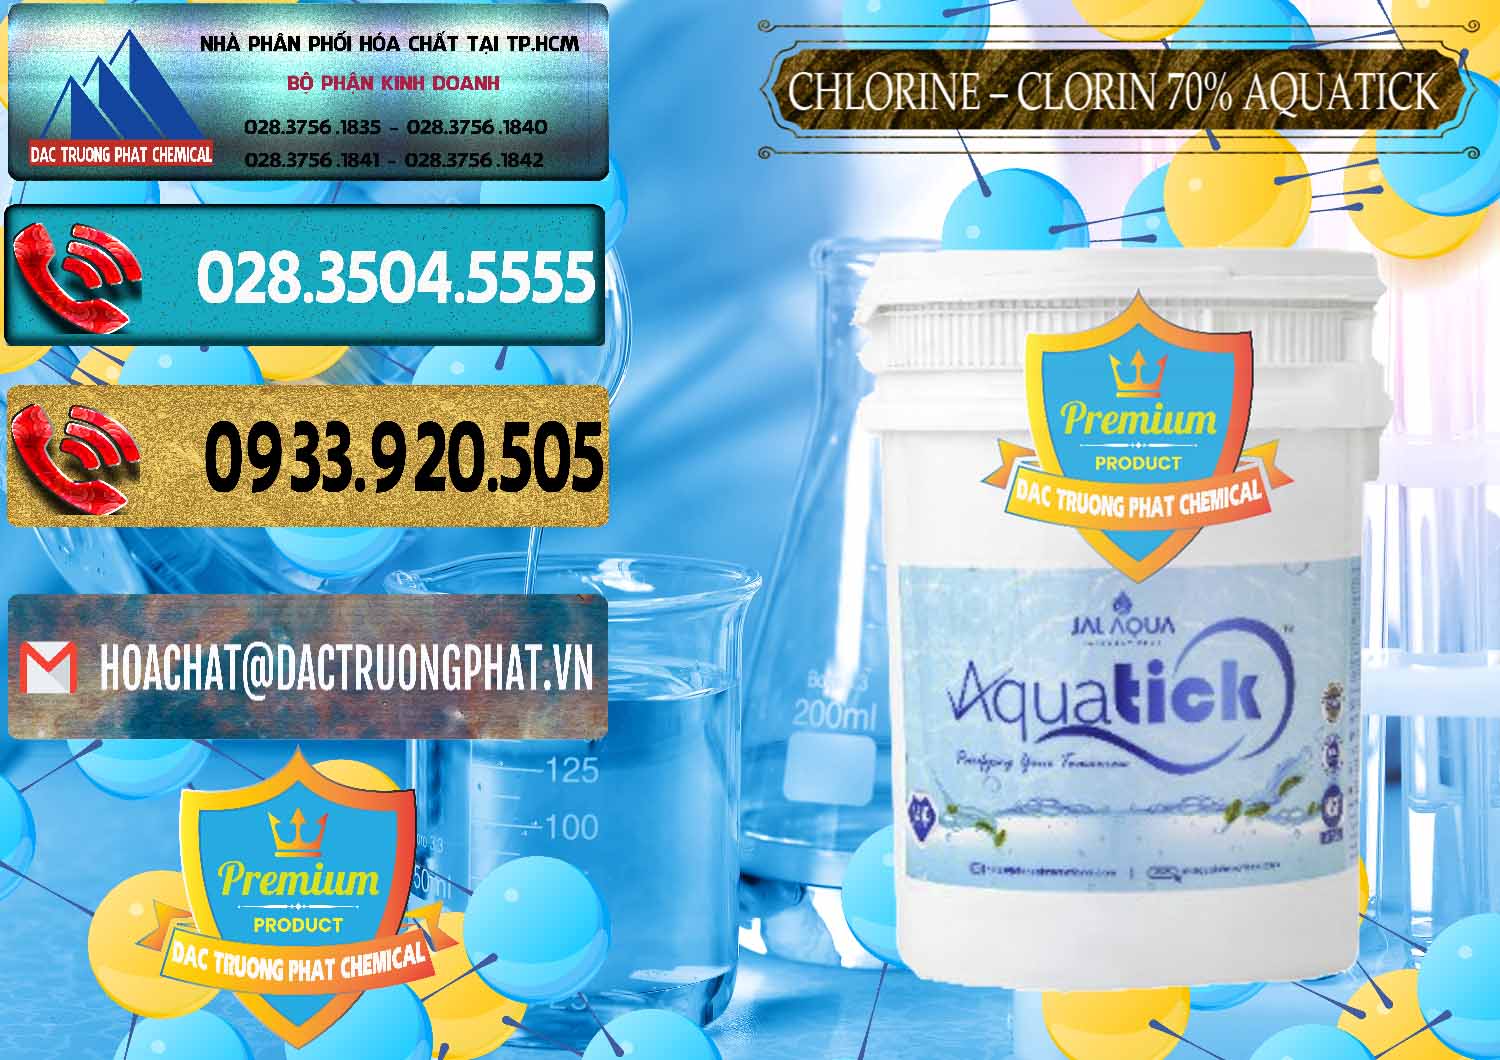 Chuyên nhập khẩu - bán Chlorine – Clorin 70% Aquatick Thùng Cao Jal Aqua Ấn Độ India - 0237 - Phân phối ( cung cấp ) hóa chất tại TP.HCM - hoachatdetnhuom.com